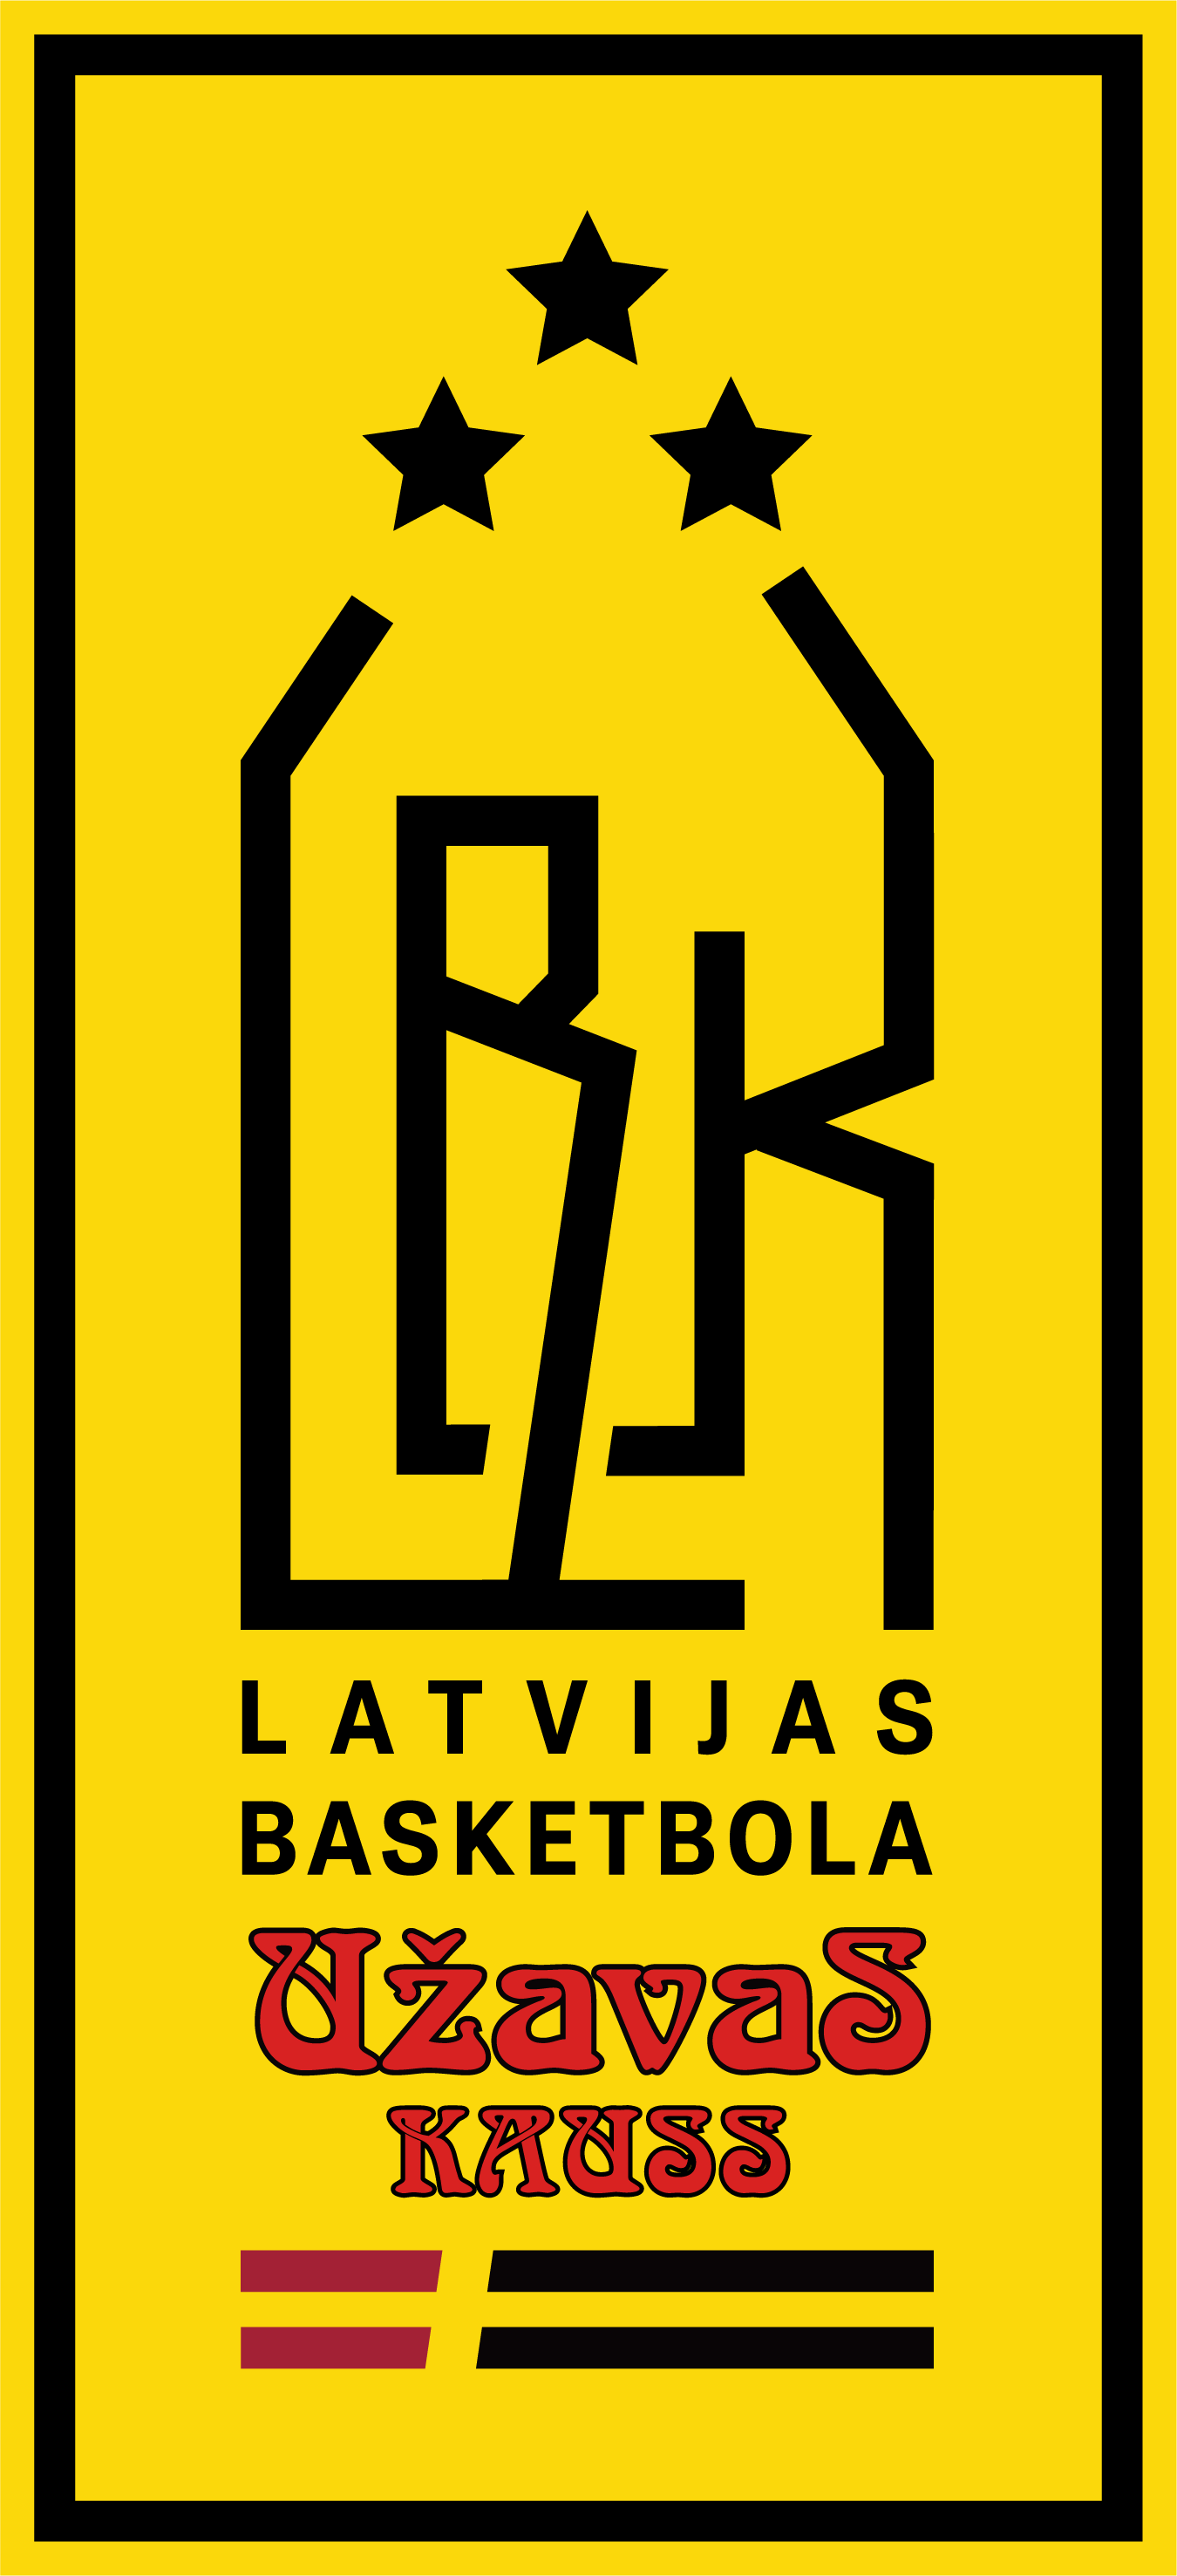 LBS valde apstiprinājusi Latvijas basketbola Užavas kausa izcīņas pusfināla grafiku